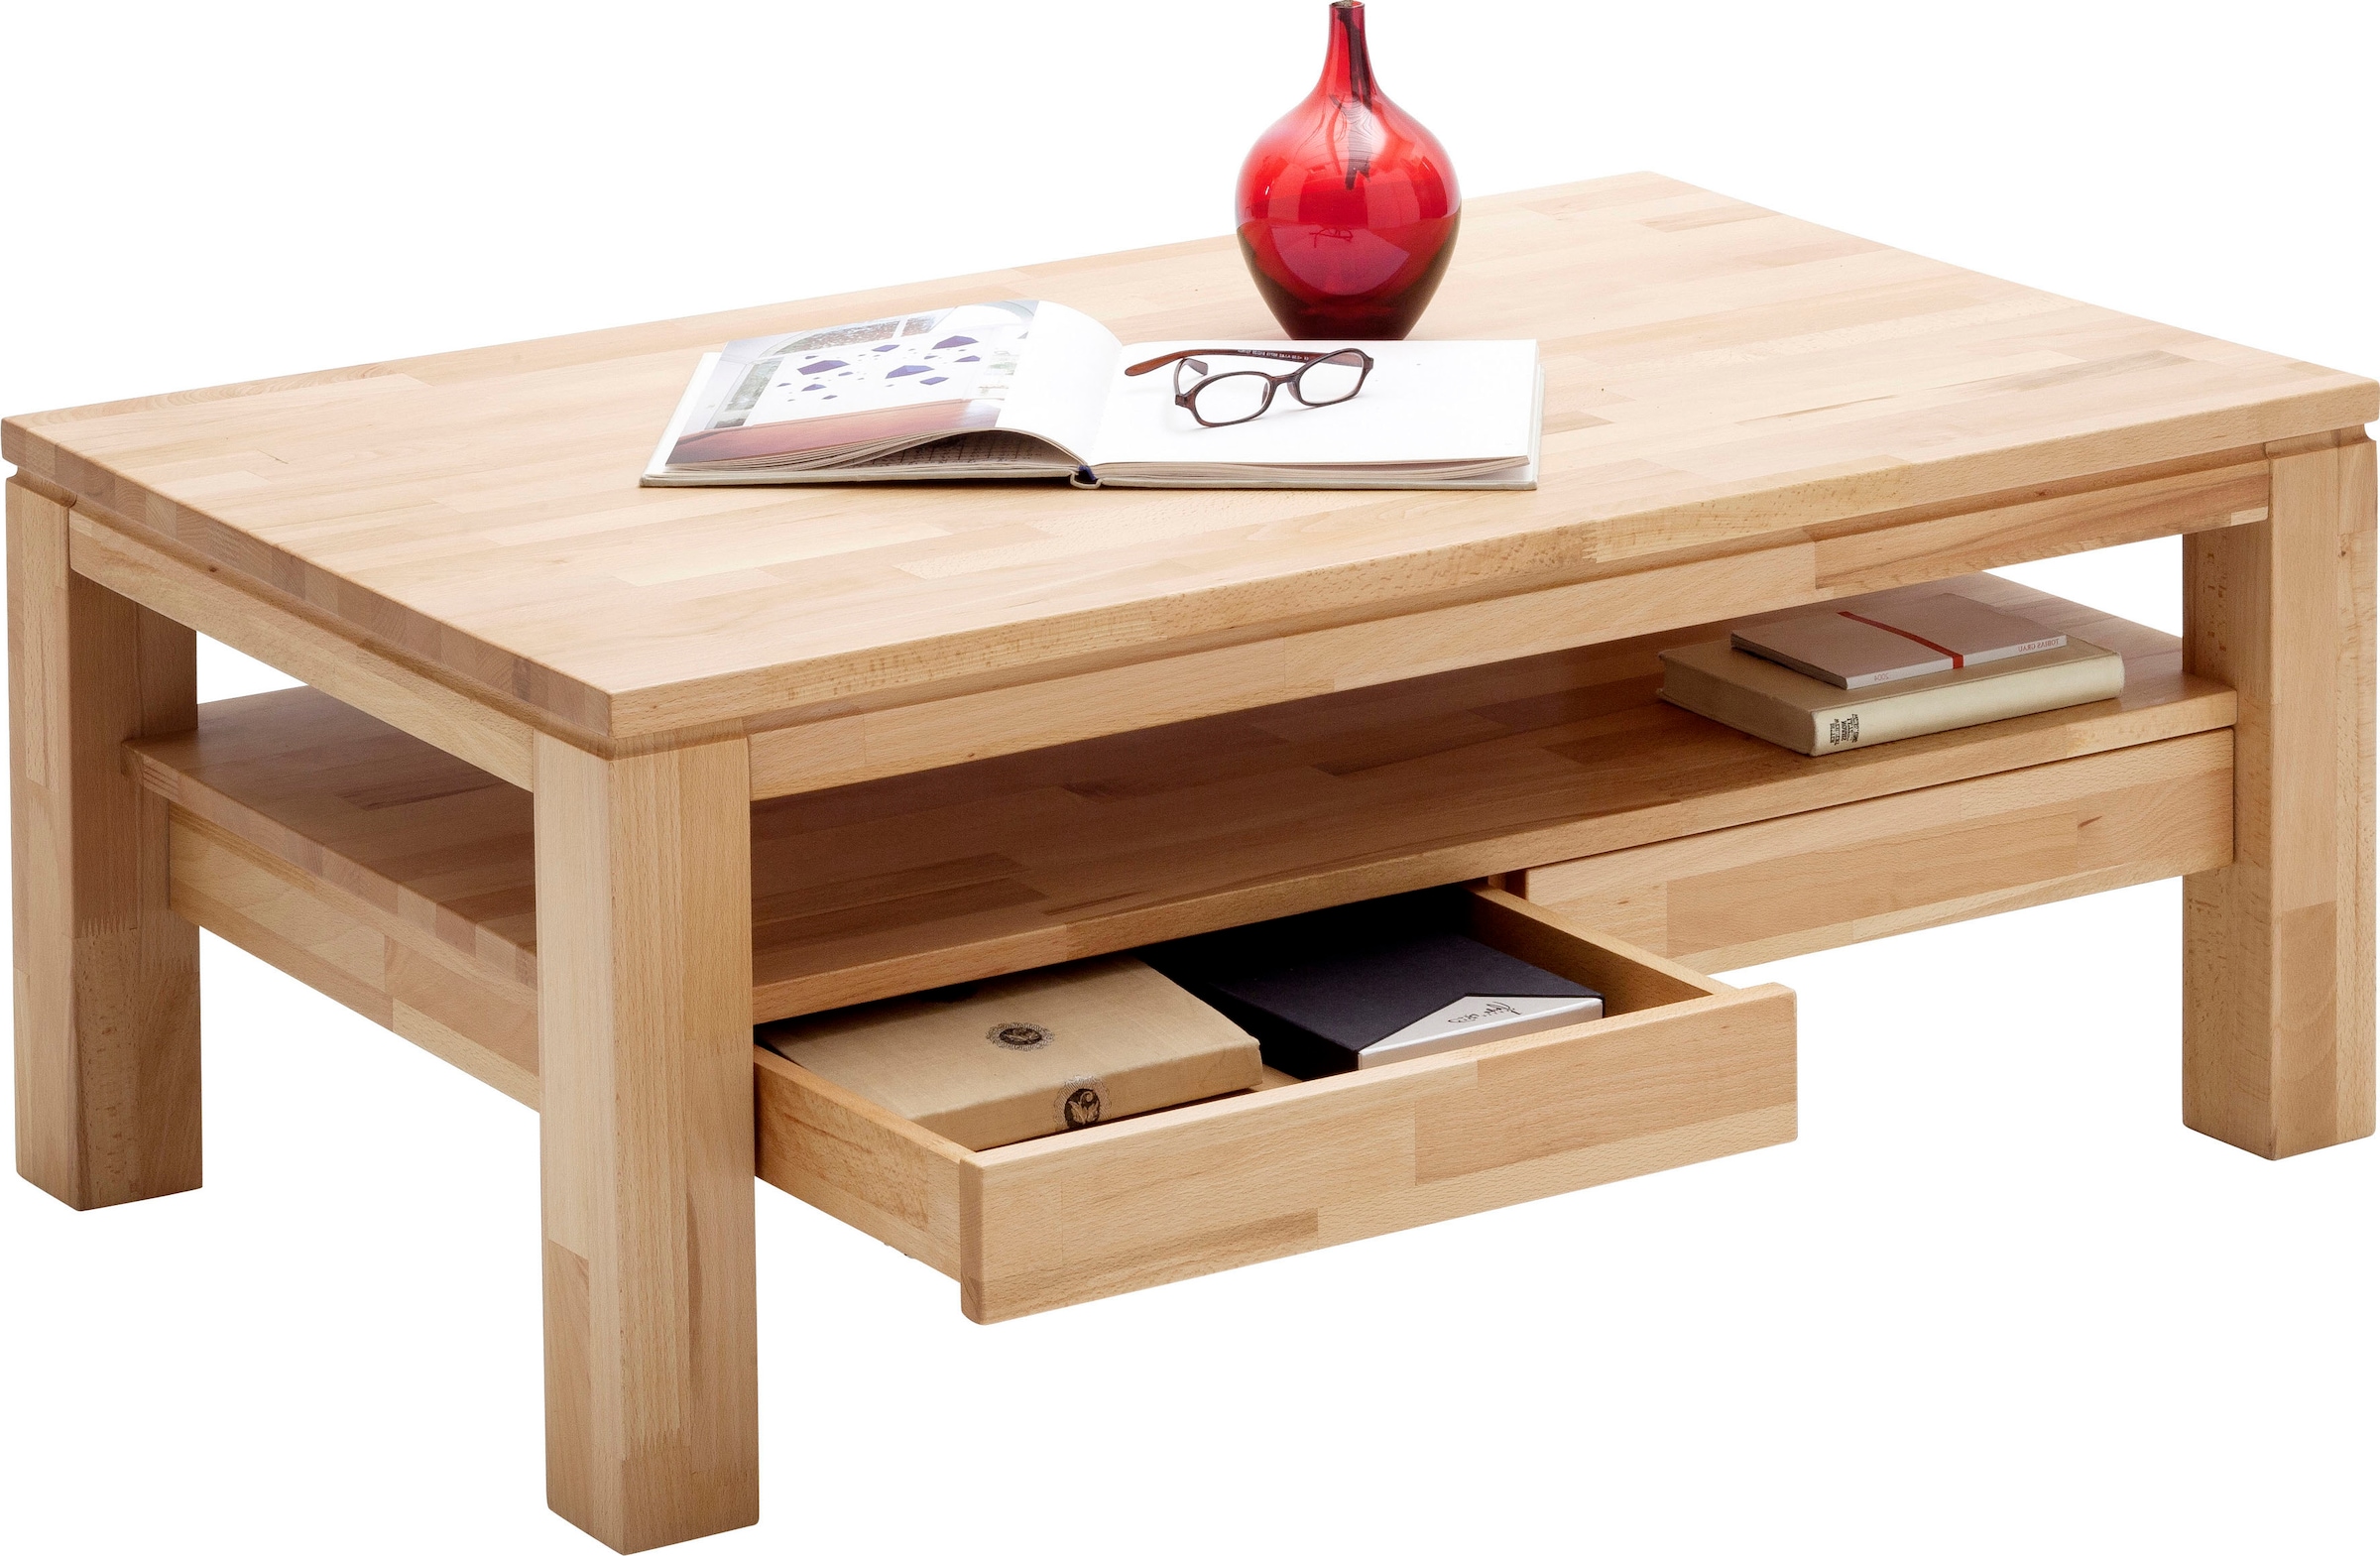 MCA furniture Couchtisch, Couchtisch Massivholz mit Schubladen jetzt kaufen